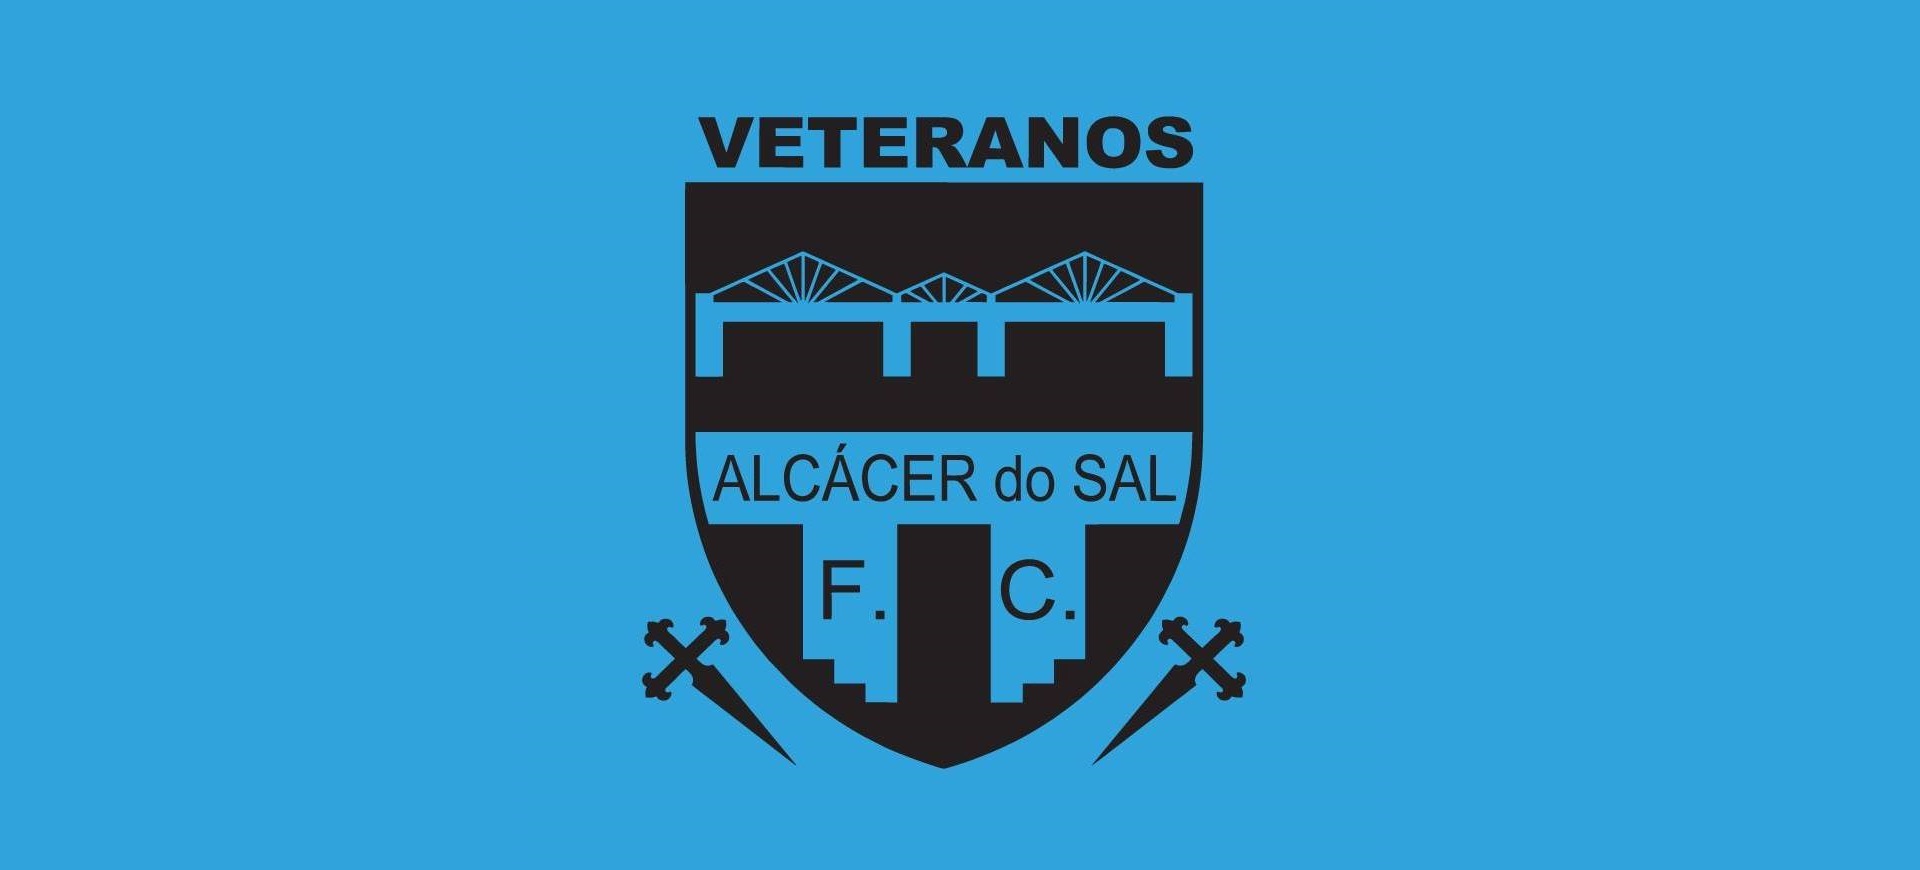 Câmara Municipal vai ceder apoio financeiro ao Alcácer do Sal FC Veteranos